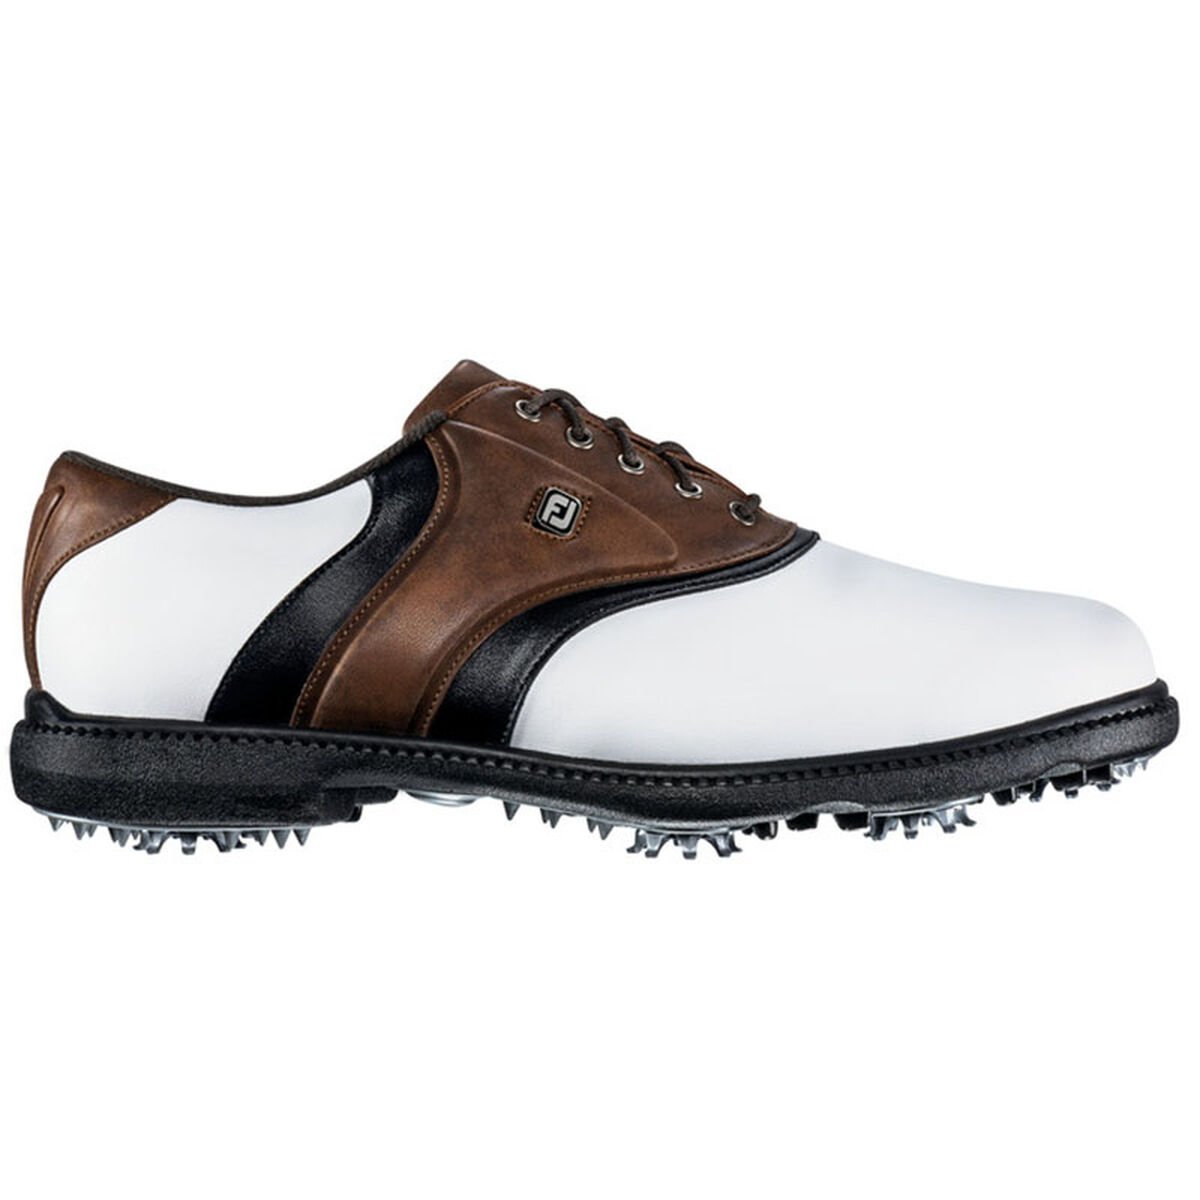 풋조이 맨 골프화 FootJoy Originals Mens Golf Shoe - Whit,White/Brown